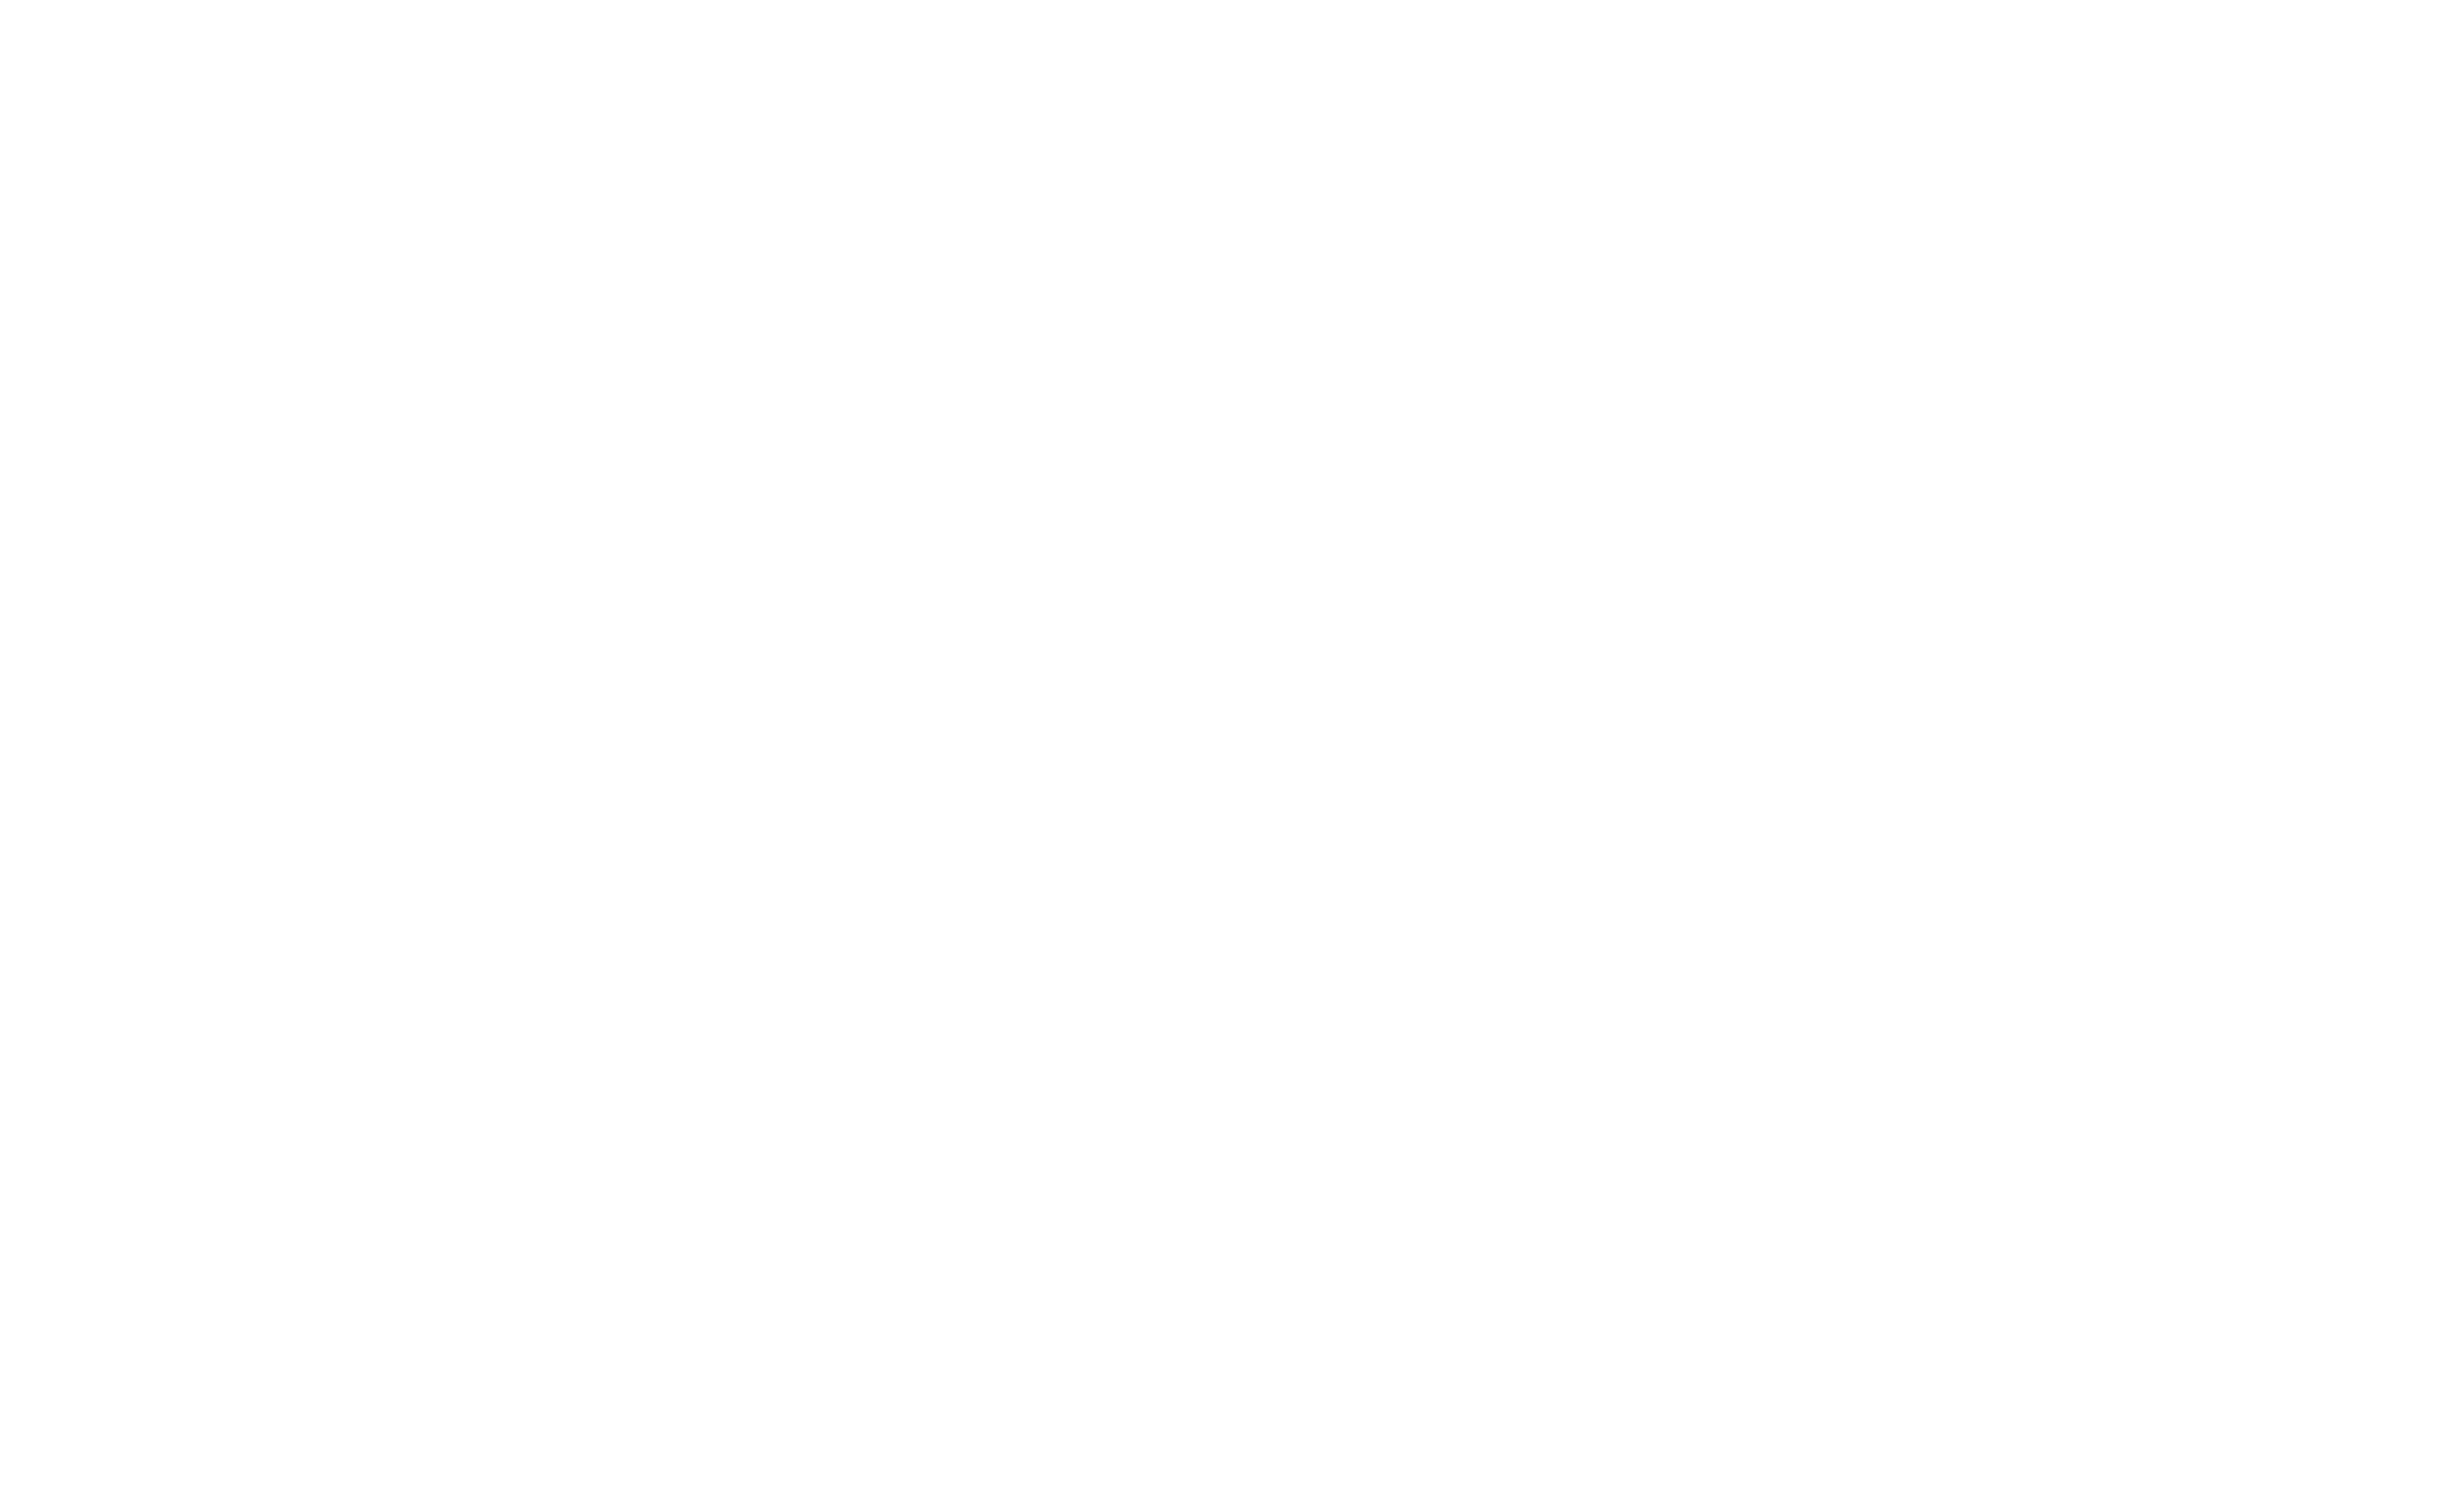 Dalfior Development